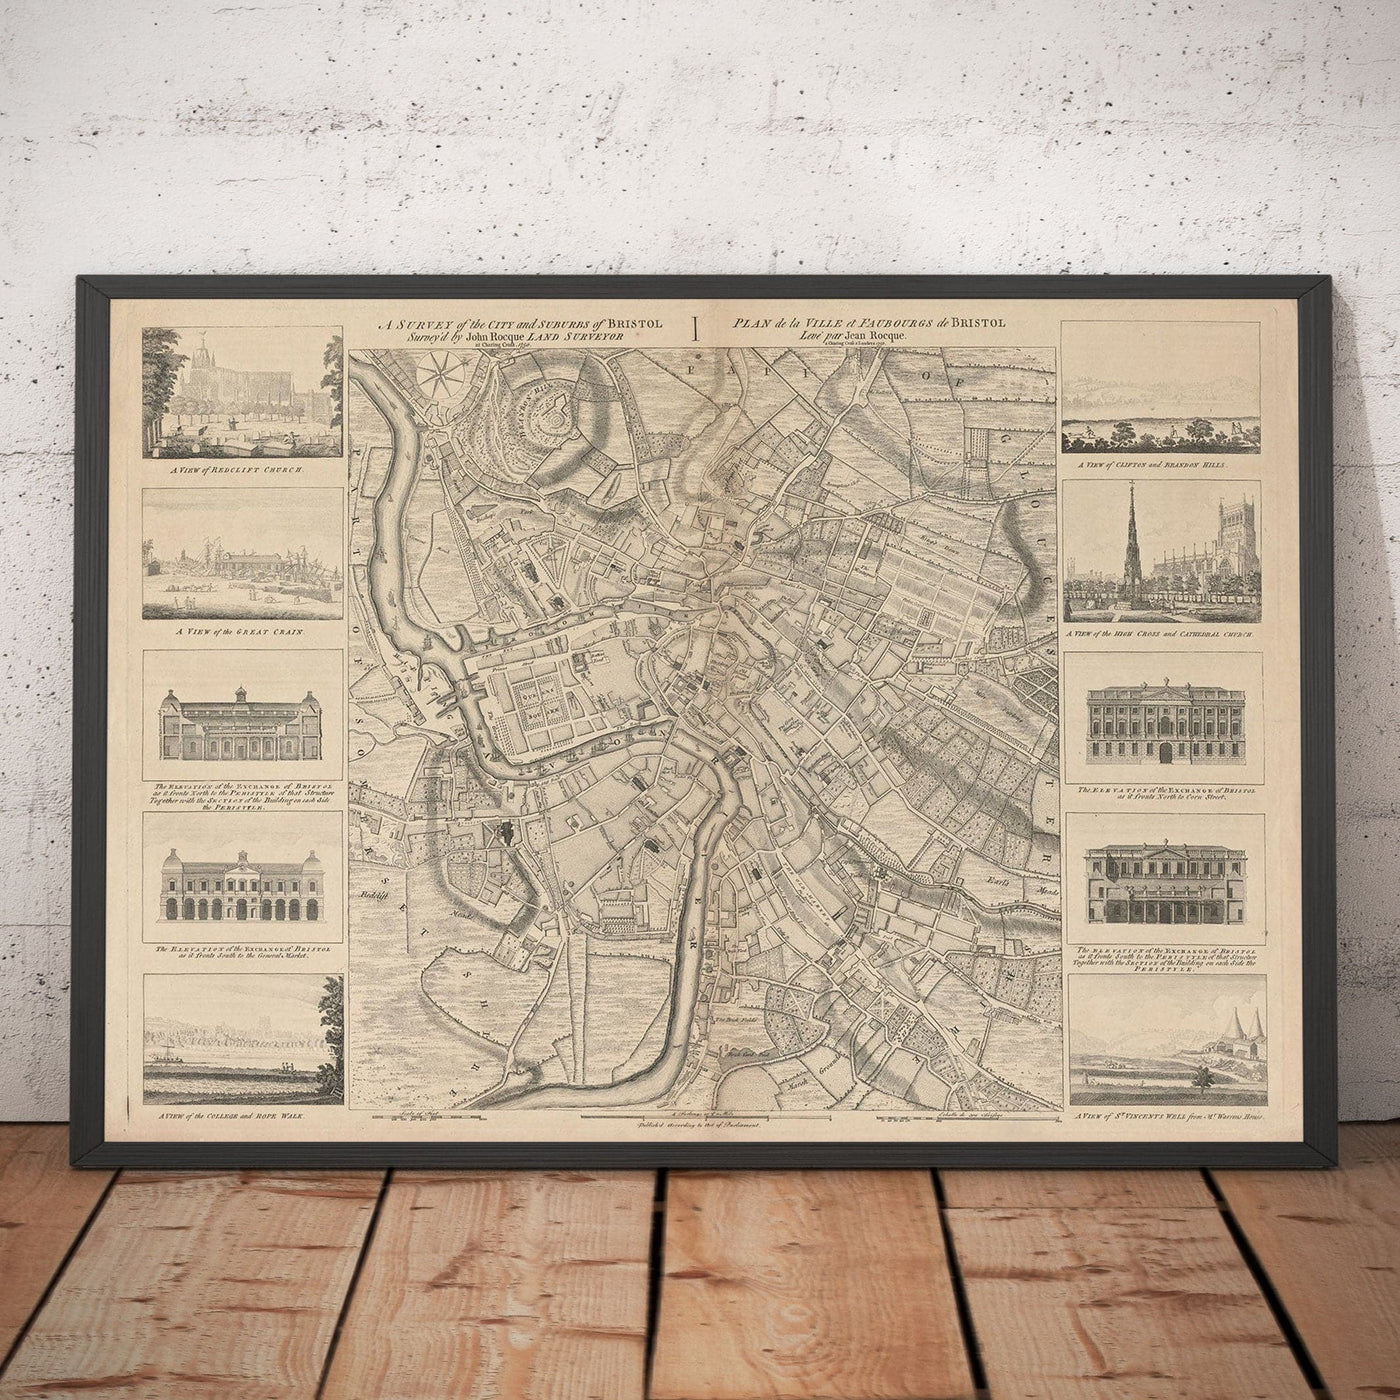 Alte Karte von Bristol im Jahr 1750 von John Rocque - Clifton, Kingsdown, Redcliffe, Cathedral City Chart